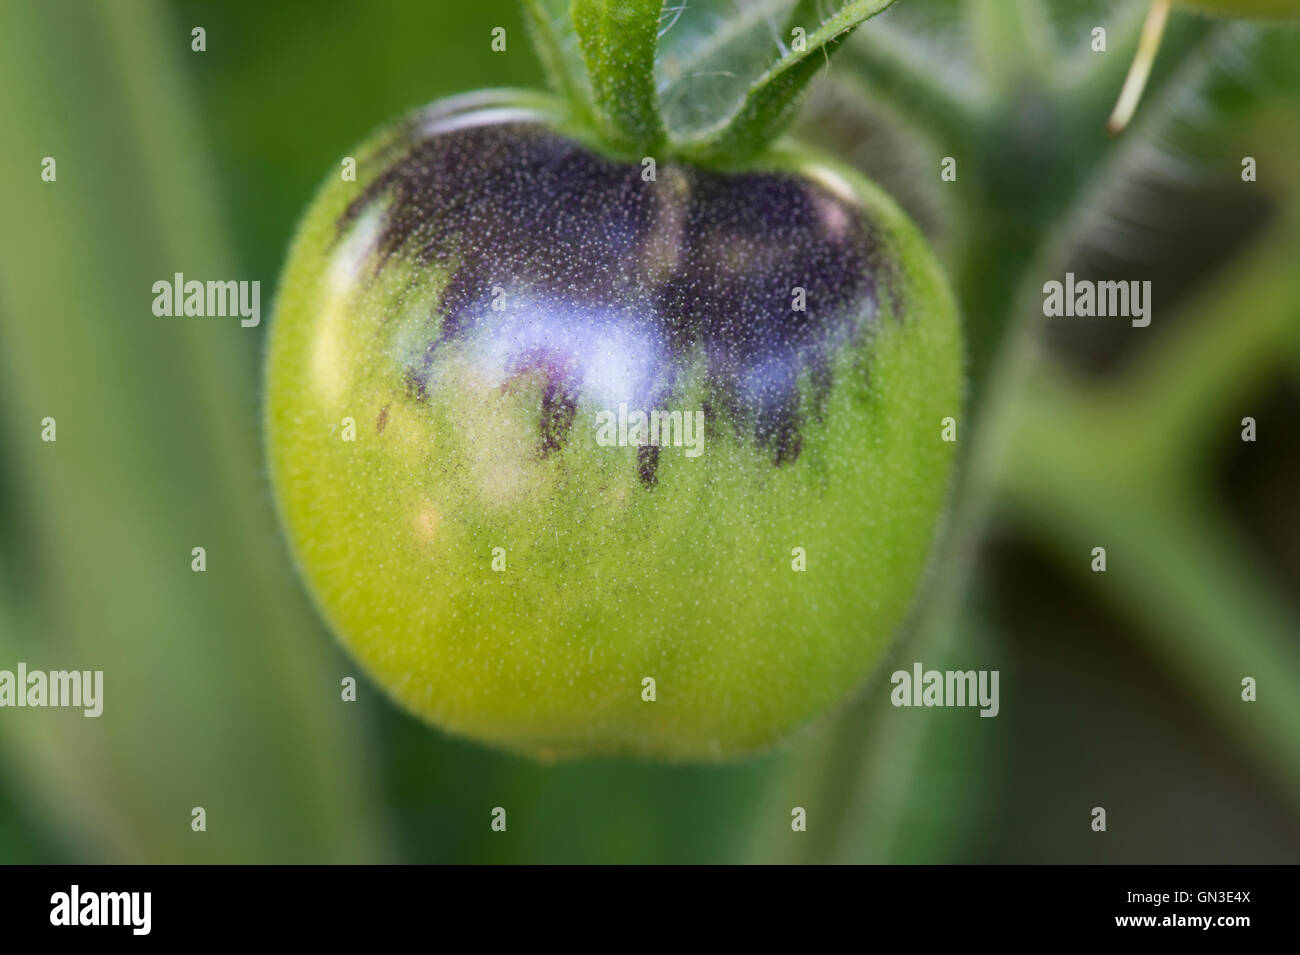 Solanum lycopersicum. Black Tomato Indigo Rose ripening on the vine Stock Photo